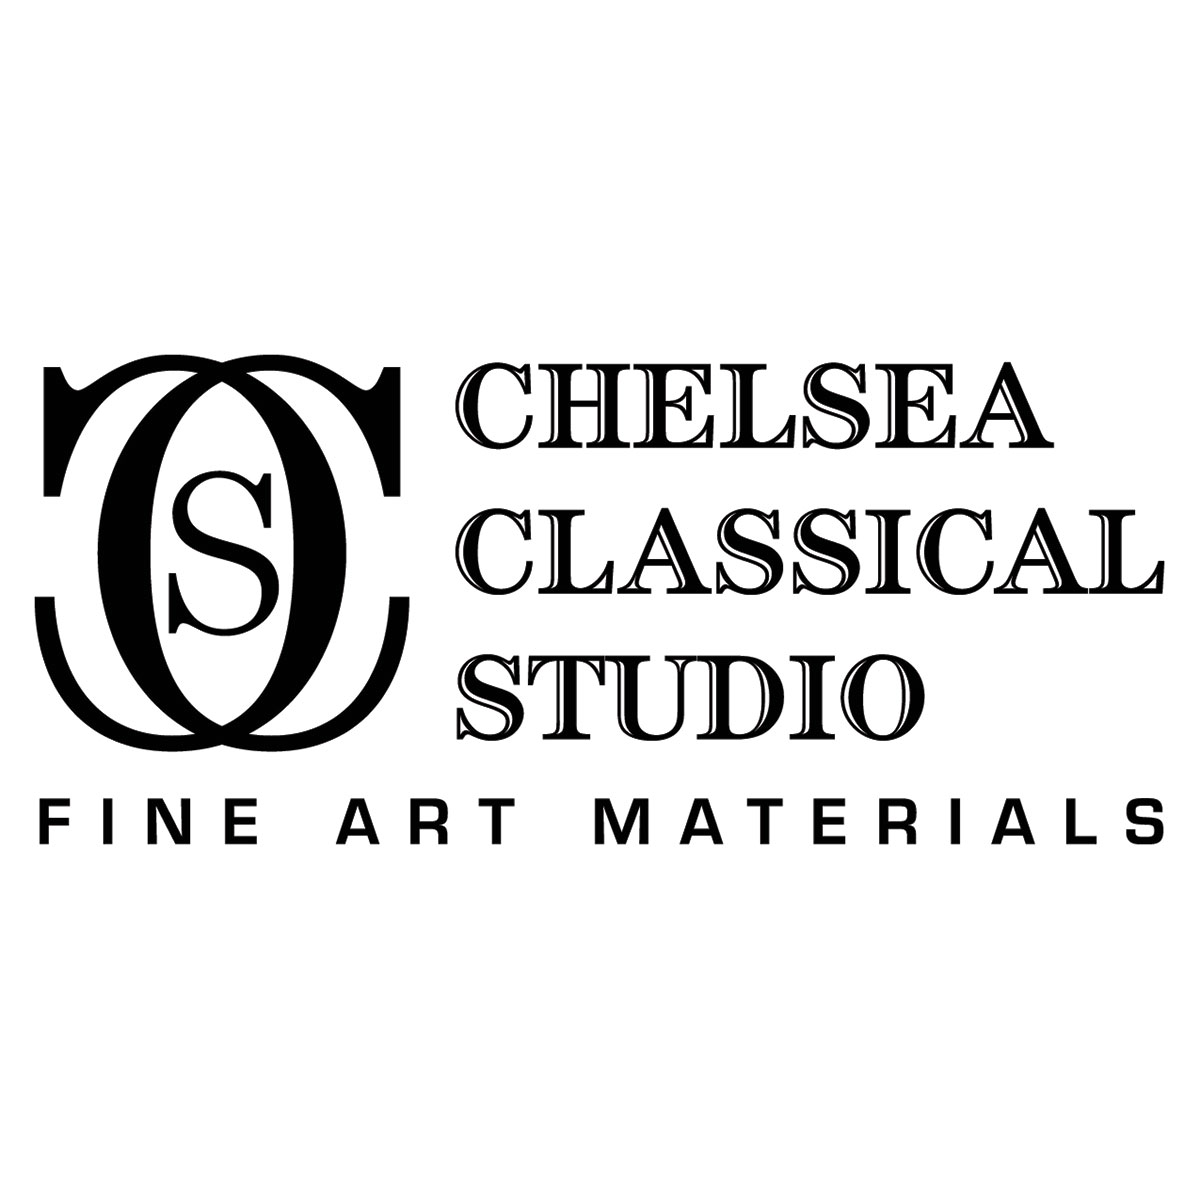 Chelsea Classical Studio : Citrus Essence Brush Cleaner : 4oz (118ml)